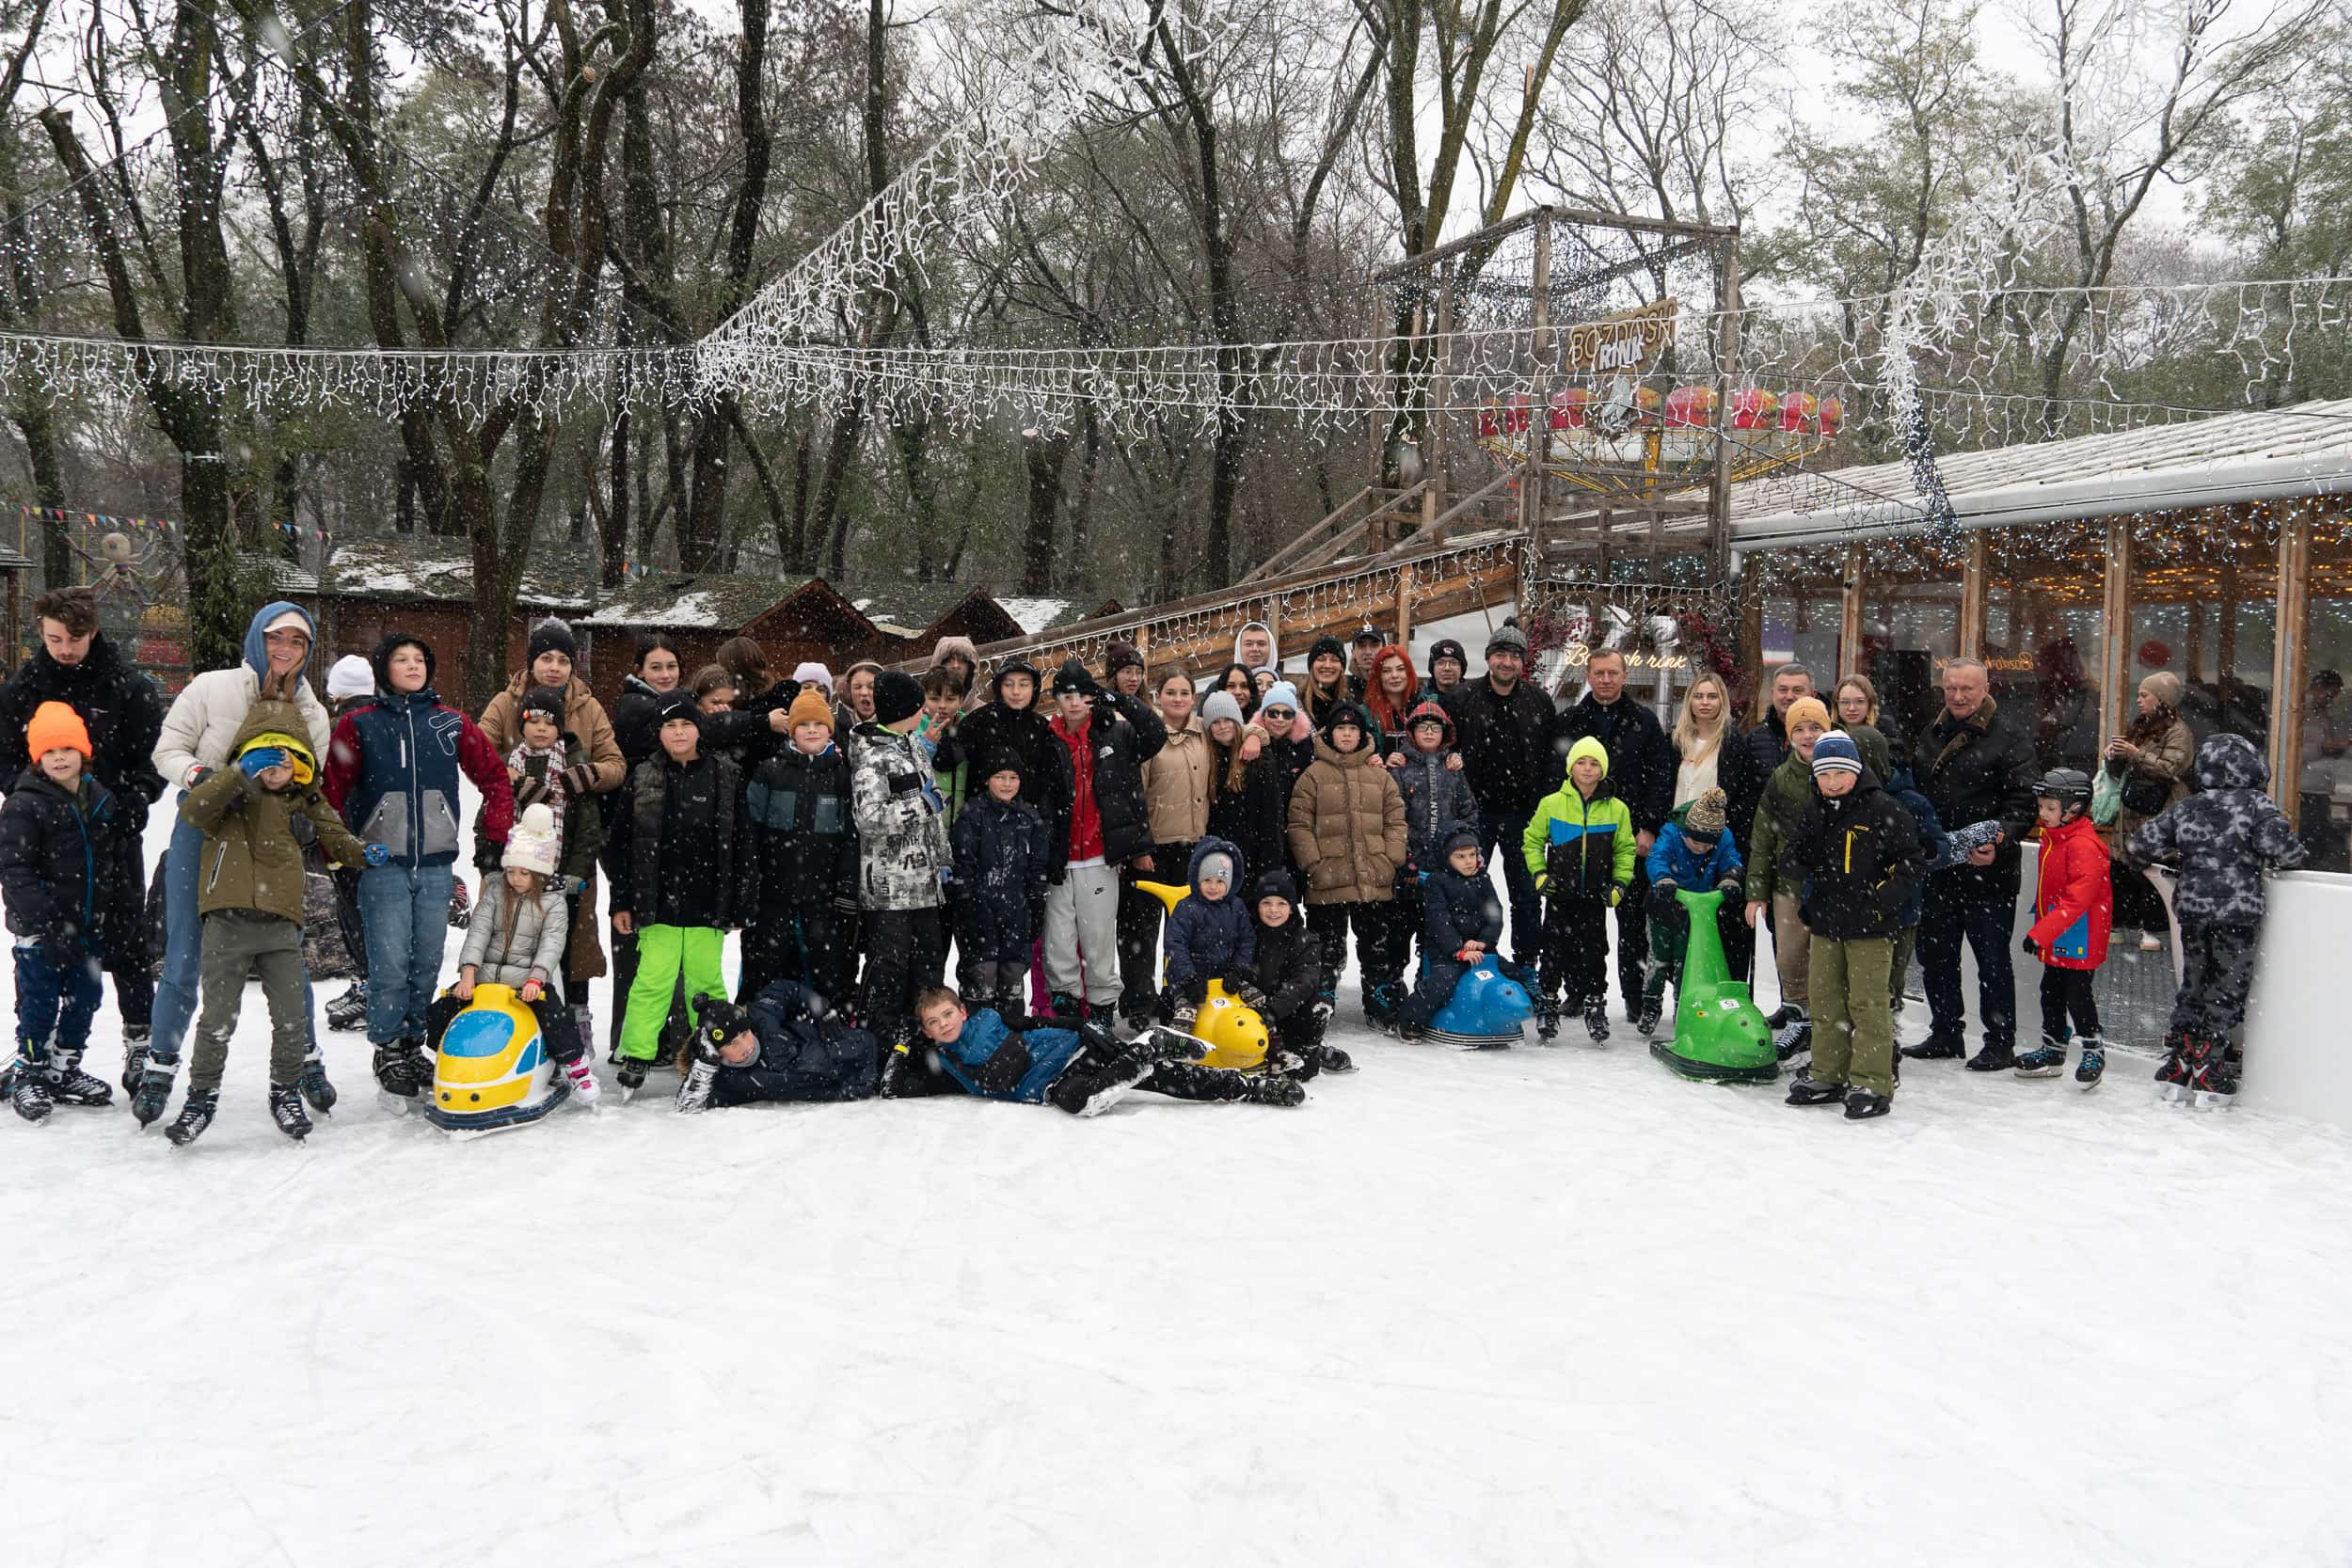 Безкоштовно покататися на ковзанах змогли діти військових та вихованці ужгородської ДЮСШ на ковзанці Bozdoshrink у Боздоському парку в Ужгороді